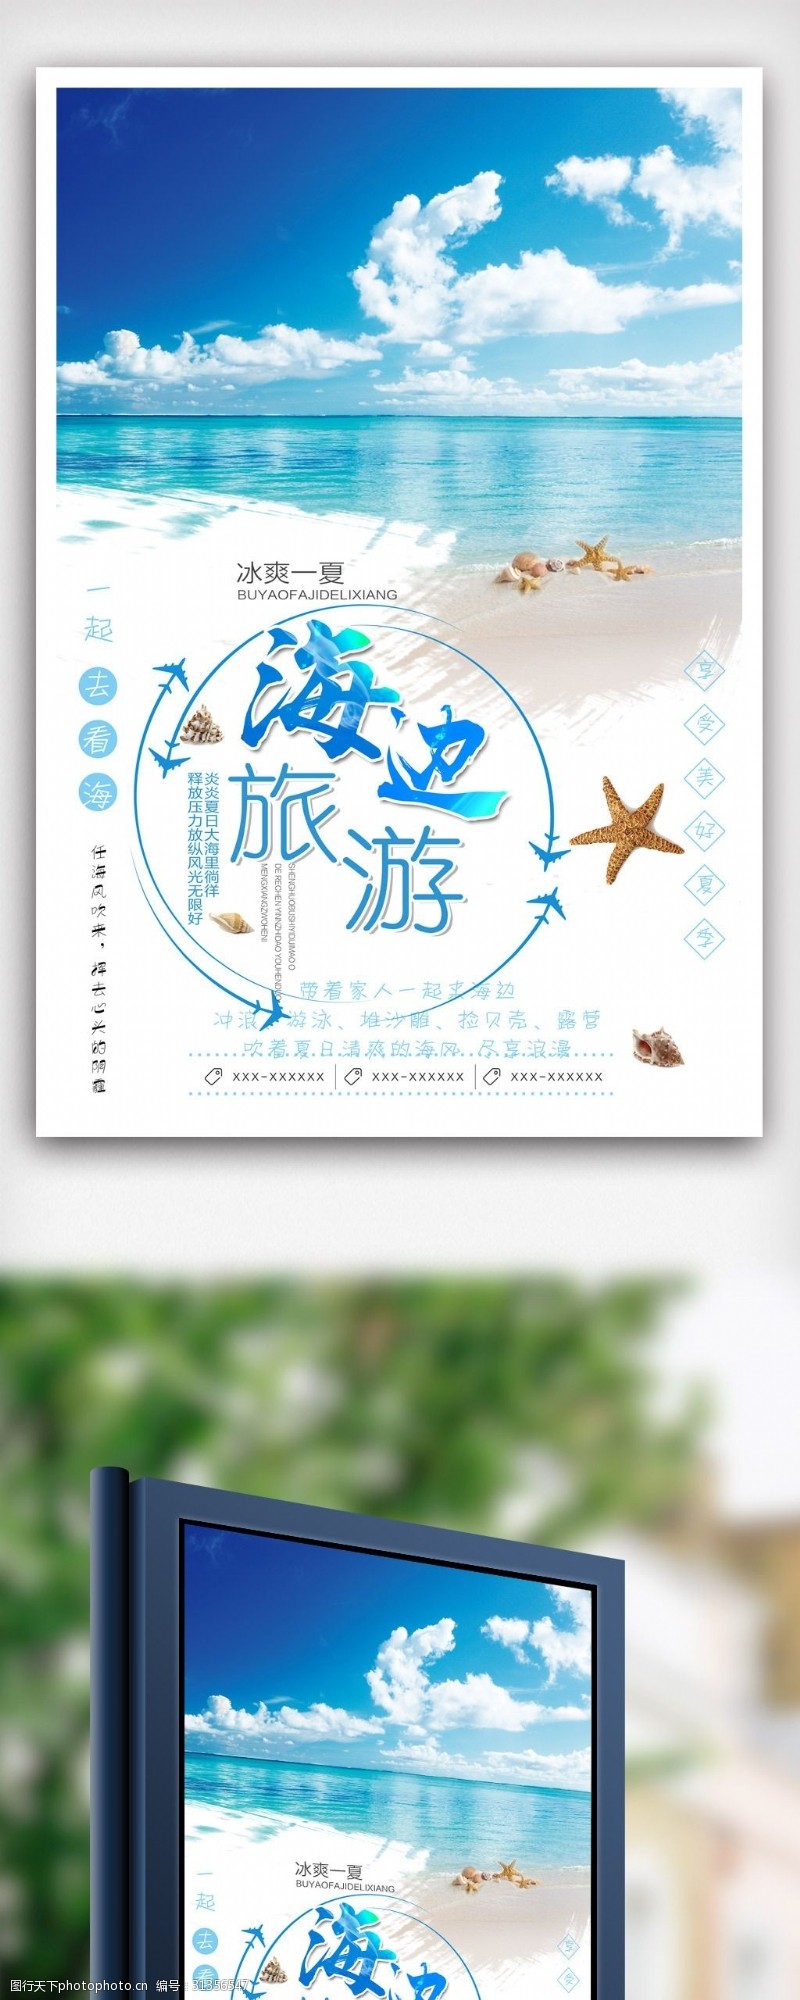 夏日海边旅游设计海报模版.psd